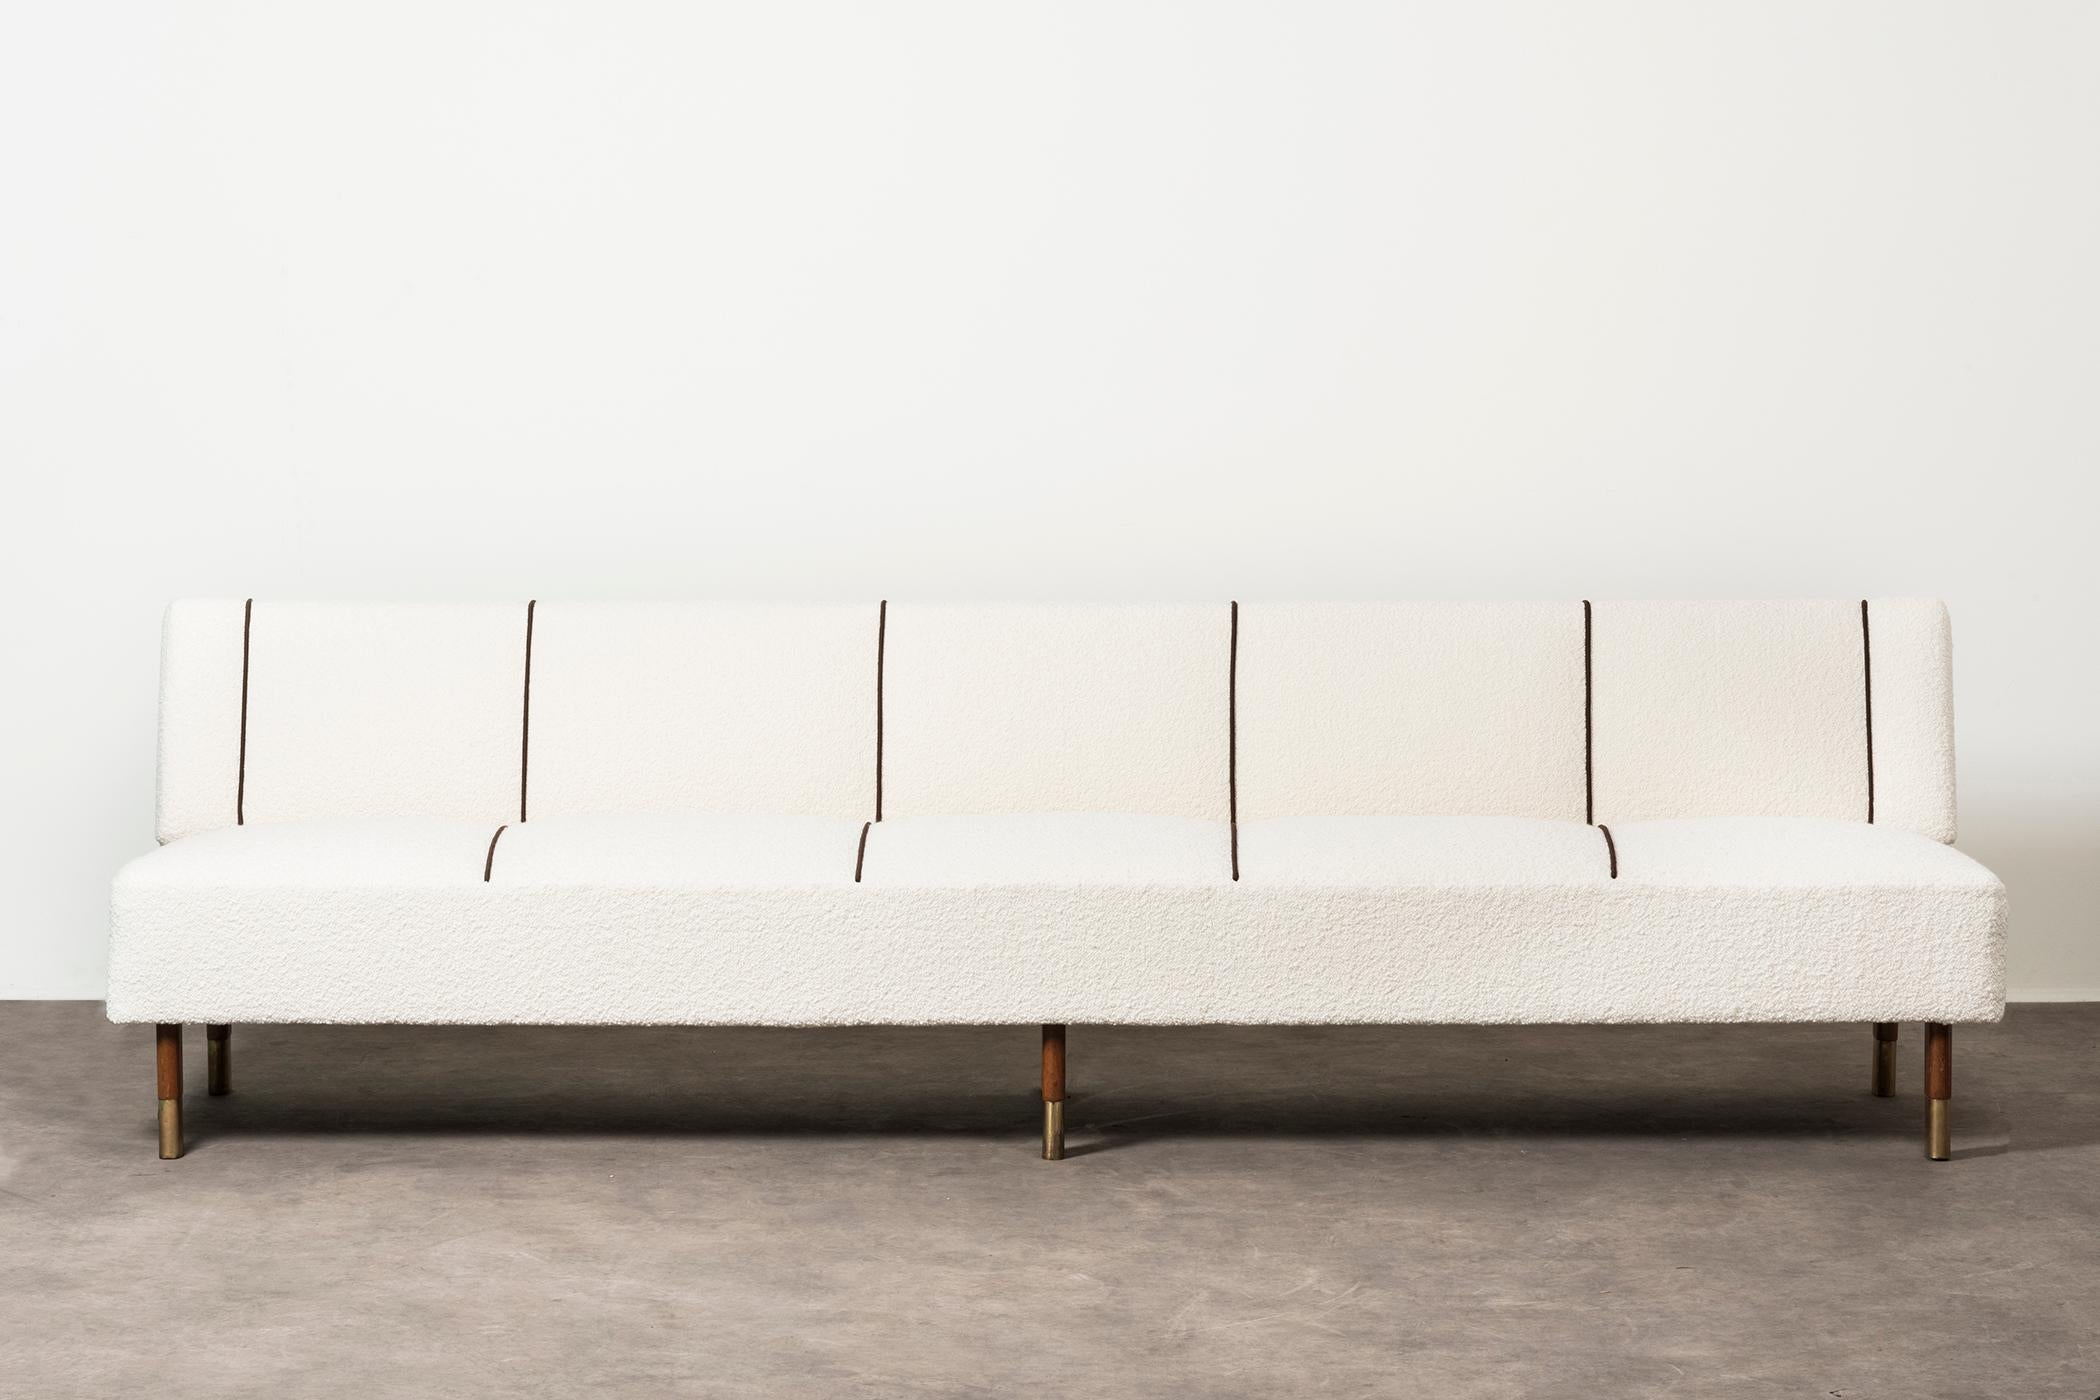 Seltenes Sofa von Alvar Aalto. Finnland, 1956. Provenienz: Kansanela¨kelaitos (Die finnische Sozialversicherungsanstalt). Das Beispiel wird mit dem Original Label geliefert. Holz, Messing, Stoffpolsterung. 270 x 72 x H 74 cm h seduta 43 cm. 106,2 x